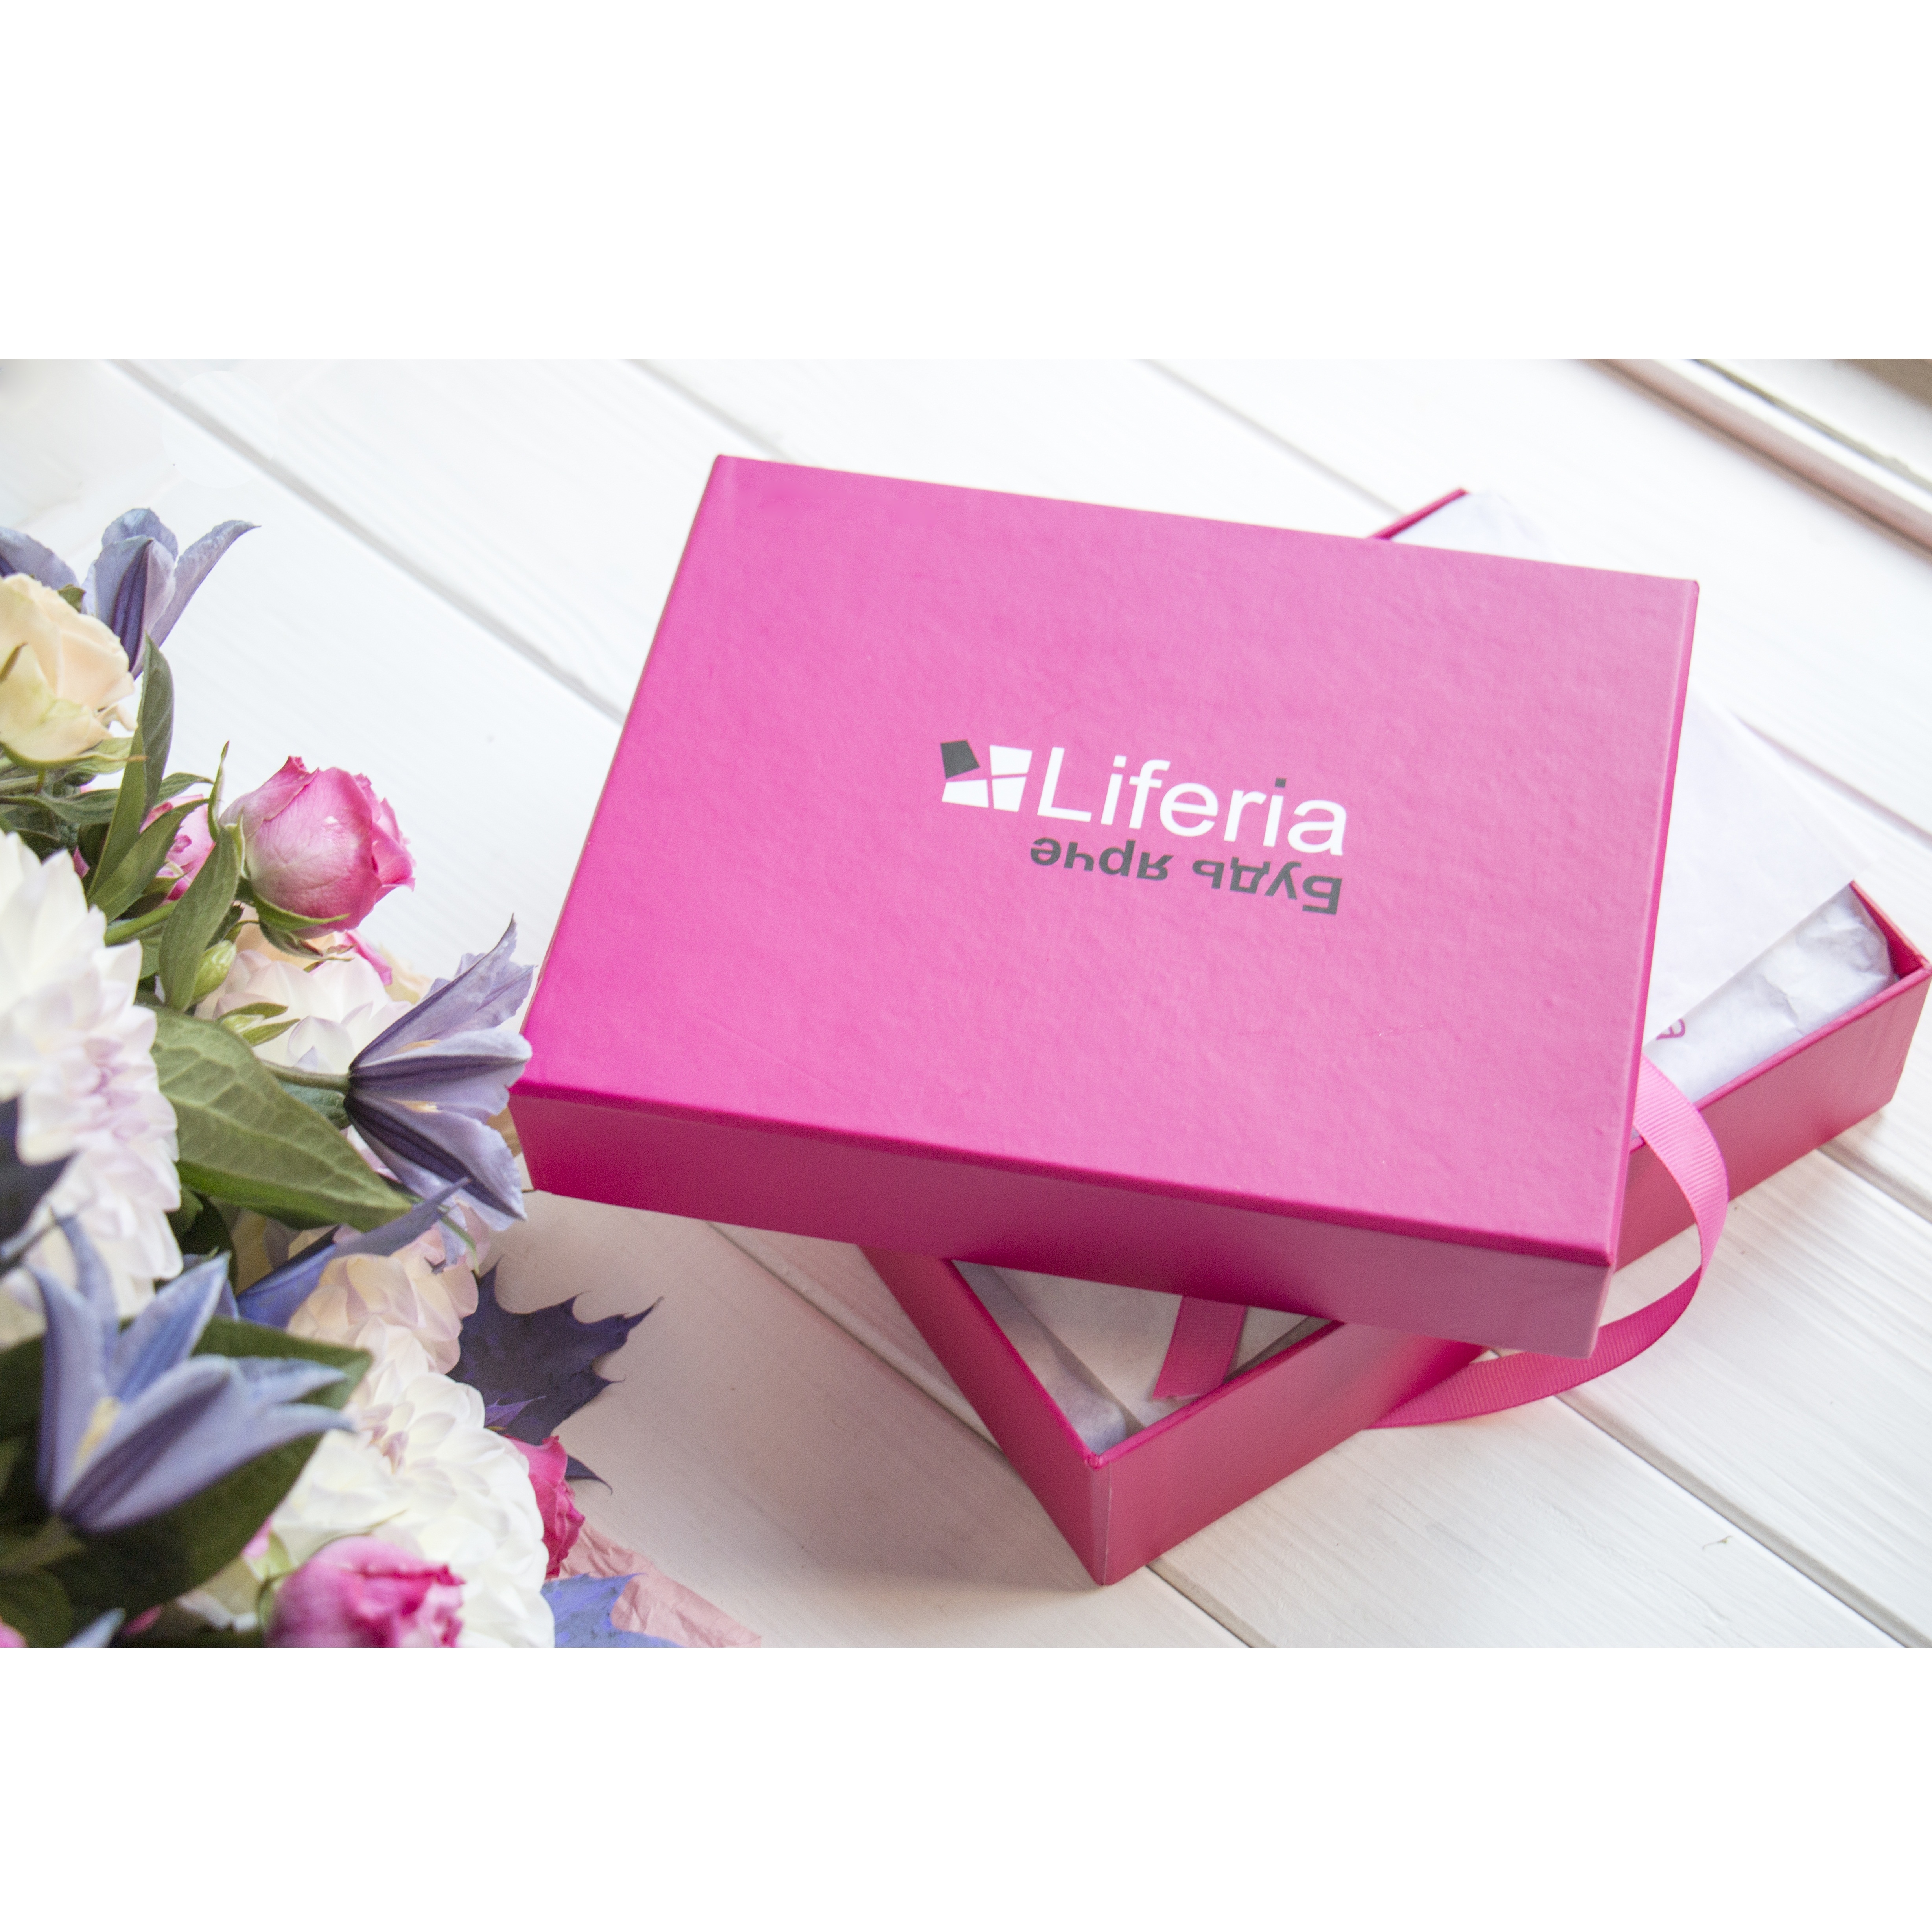 Коробка косметики Liferia